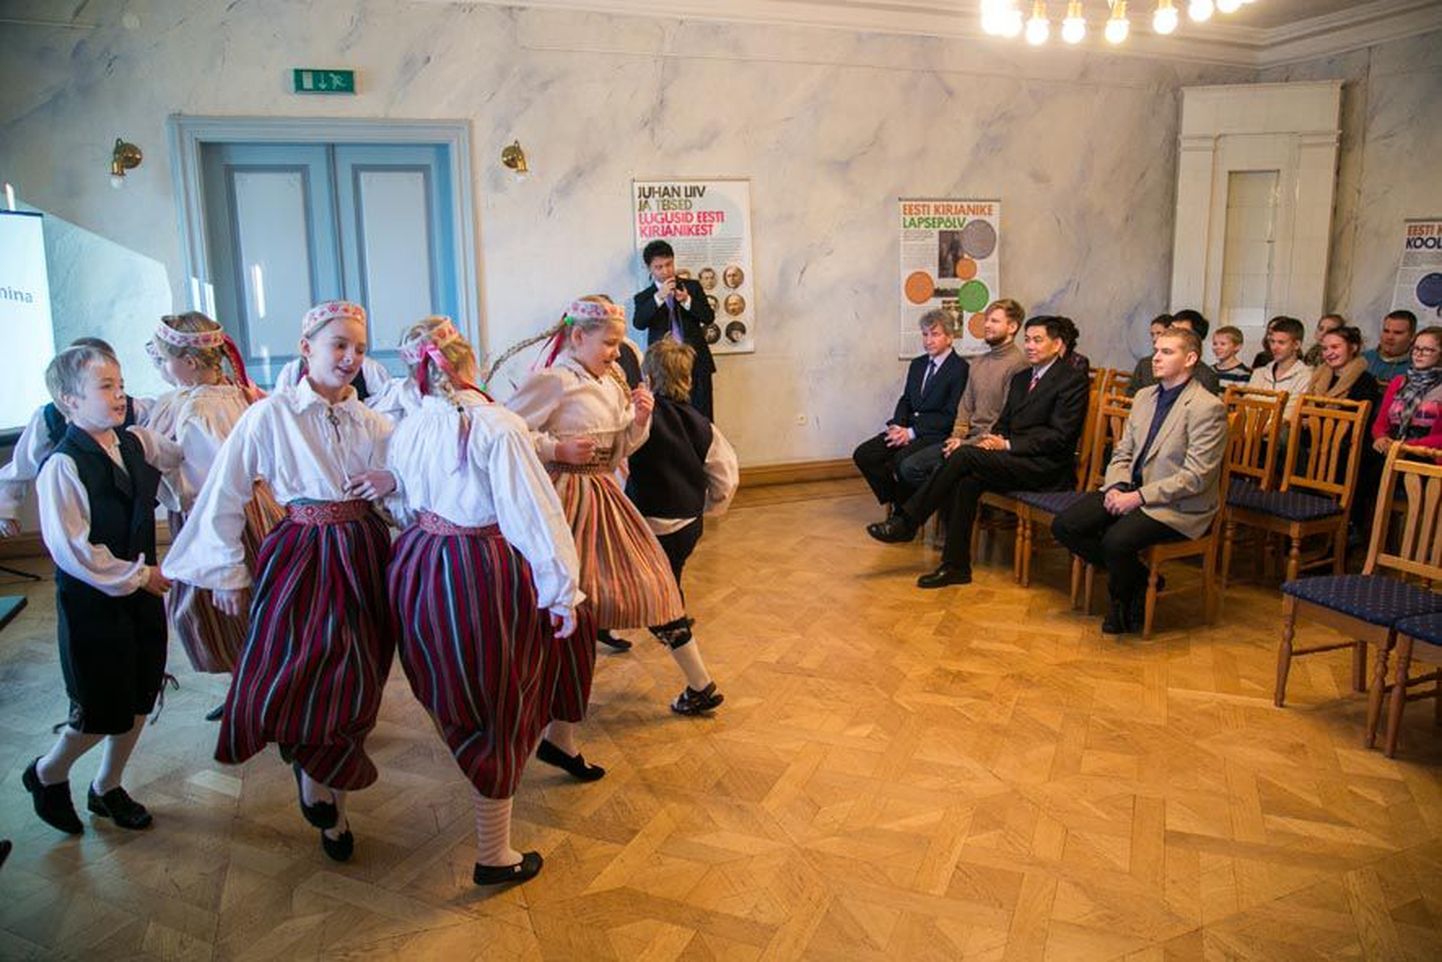 Albu põhikooli tantsulapsed näitavad Hiina suursaadikule Eestis QU Zhele mõisa saalis, kuidas näevad välja eesti rahvarõivad ja rahvatantsud.